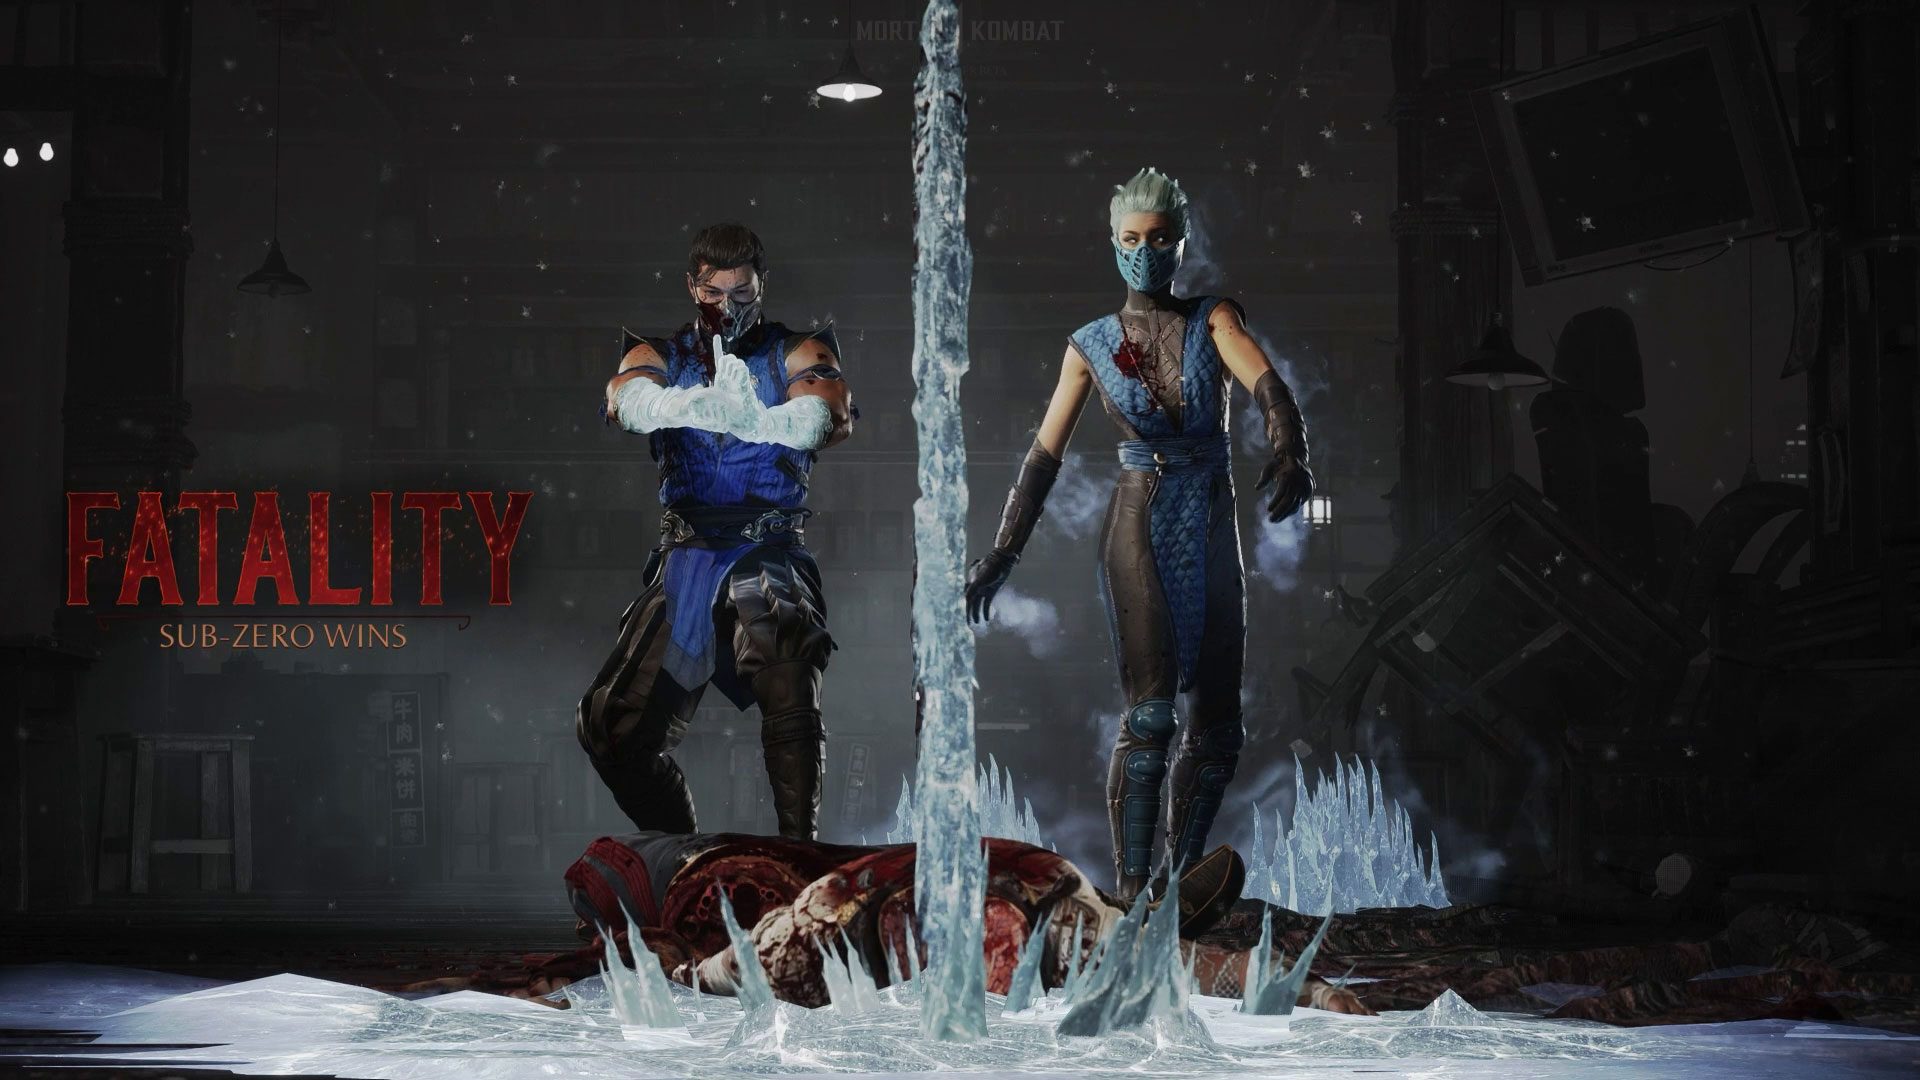 Fatality no Mortal Kombat 1: veja como fazer, esports